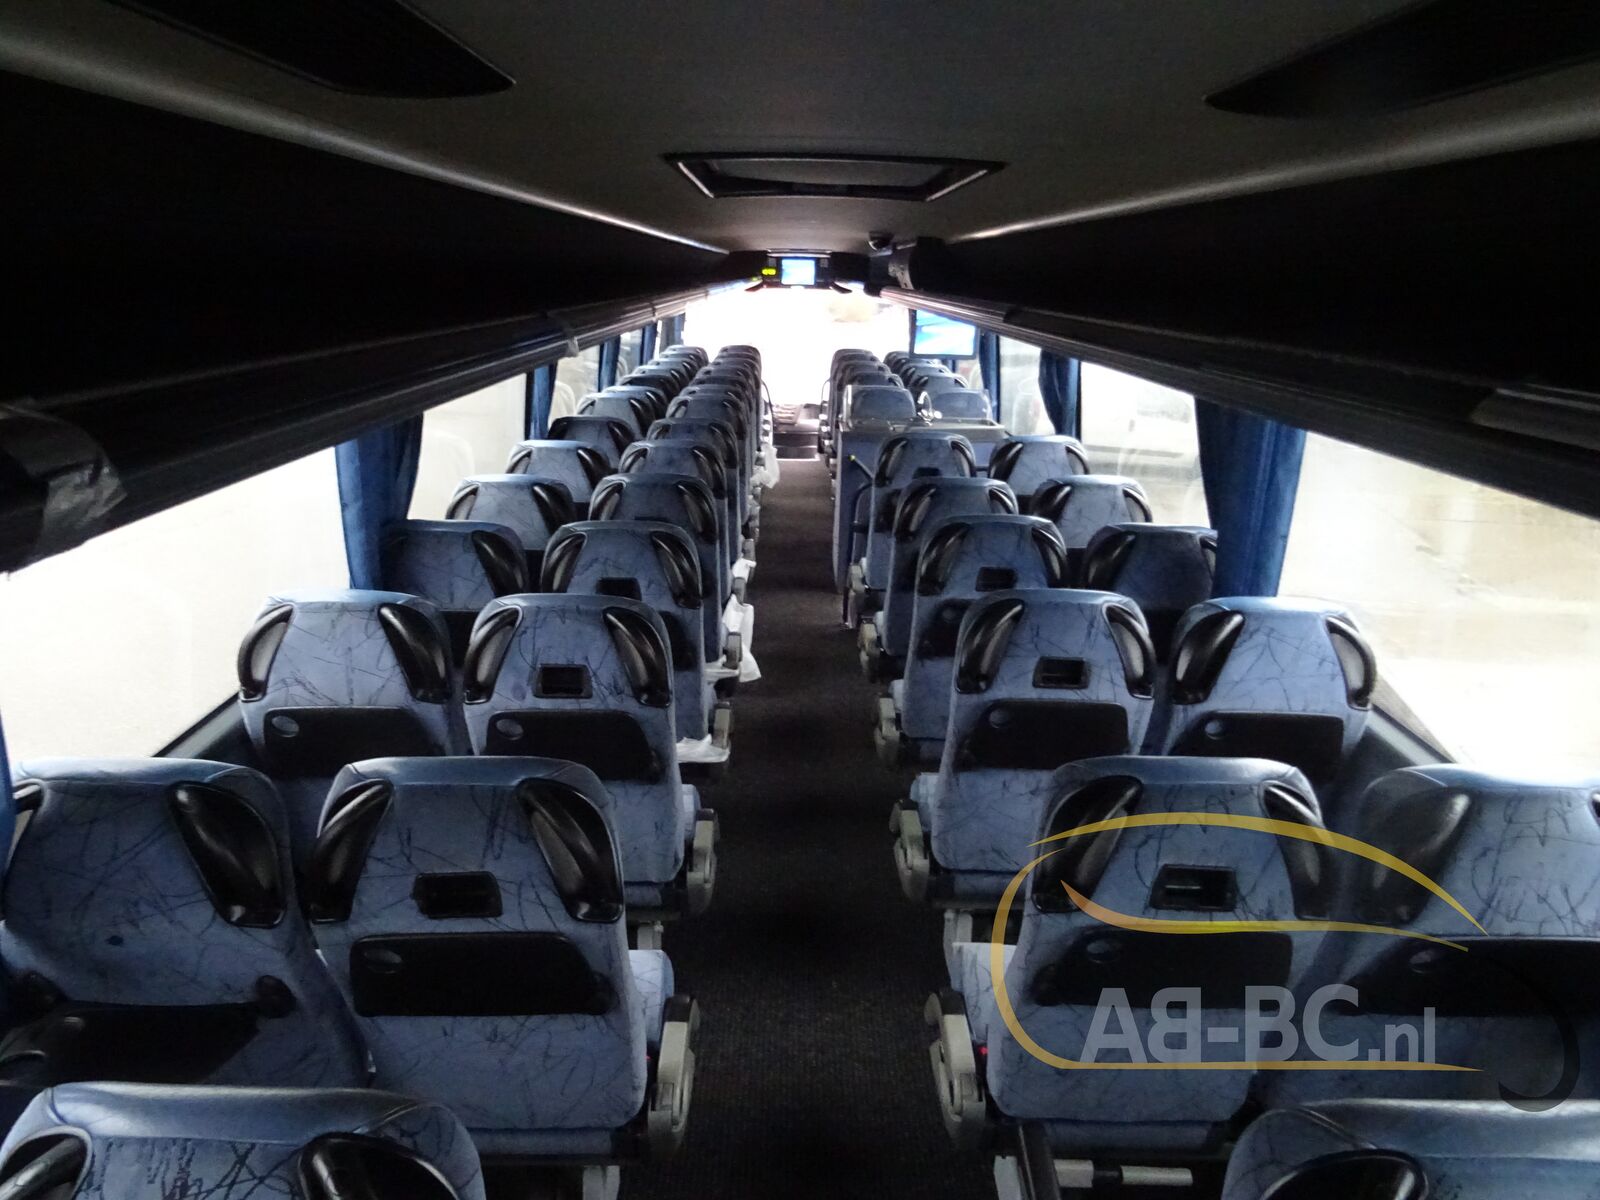 coach-bus-VDL-BOVA-Futura-61-Seats---1641294650530575430_orig_5819adfd9ad8d2d3cd0188621048d501--22010413024564861800